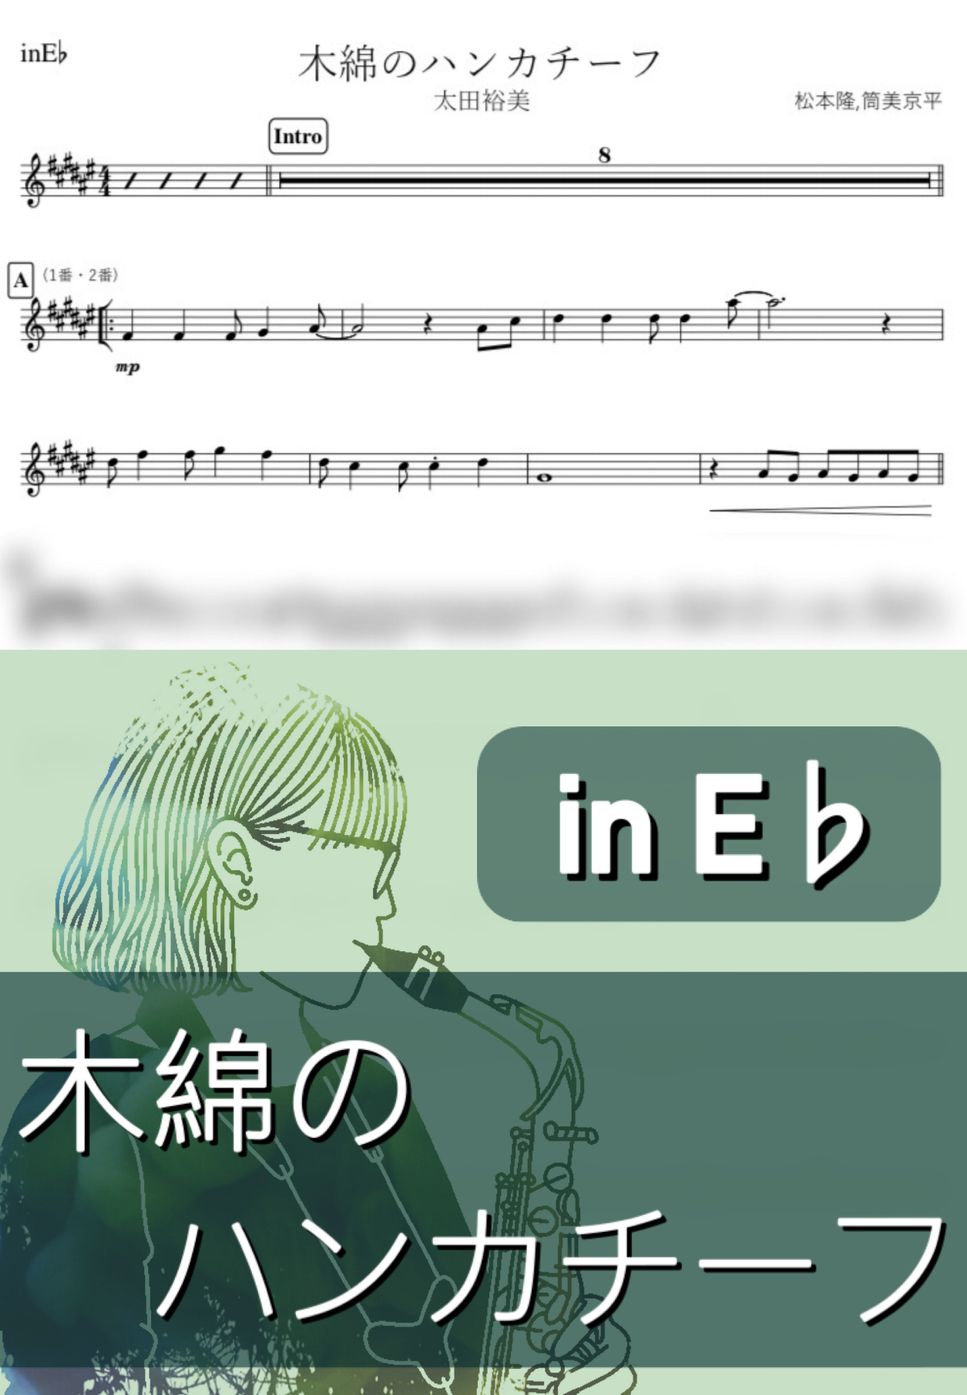 太田裕美 - 木綿のハンカチーフ (E♭) by kanamusic